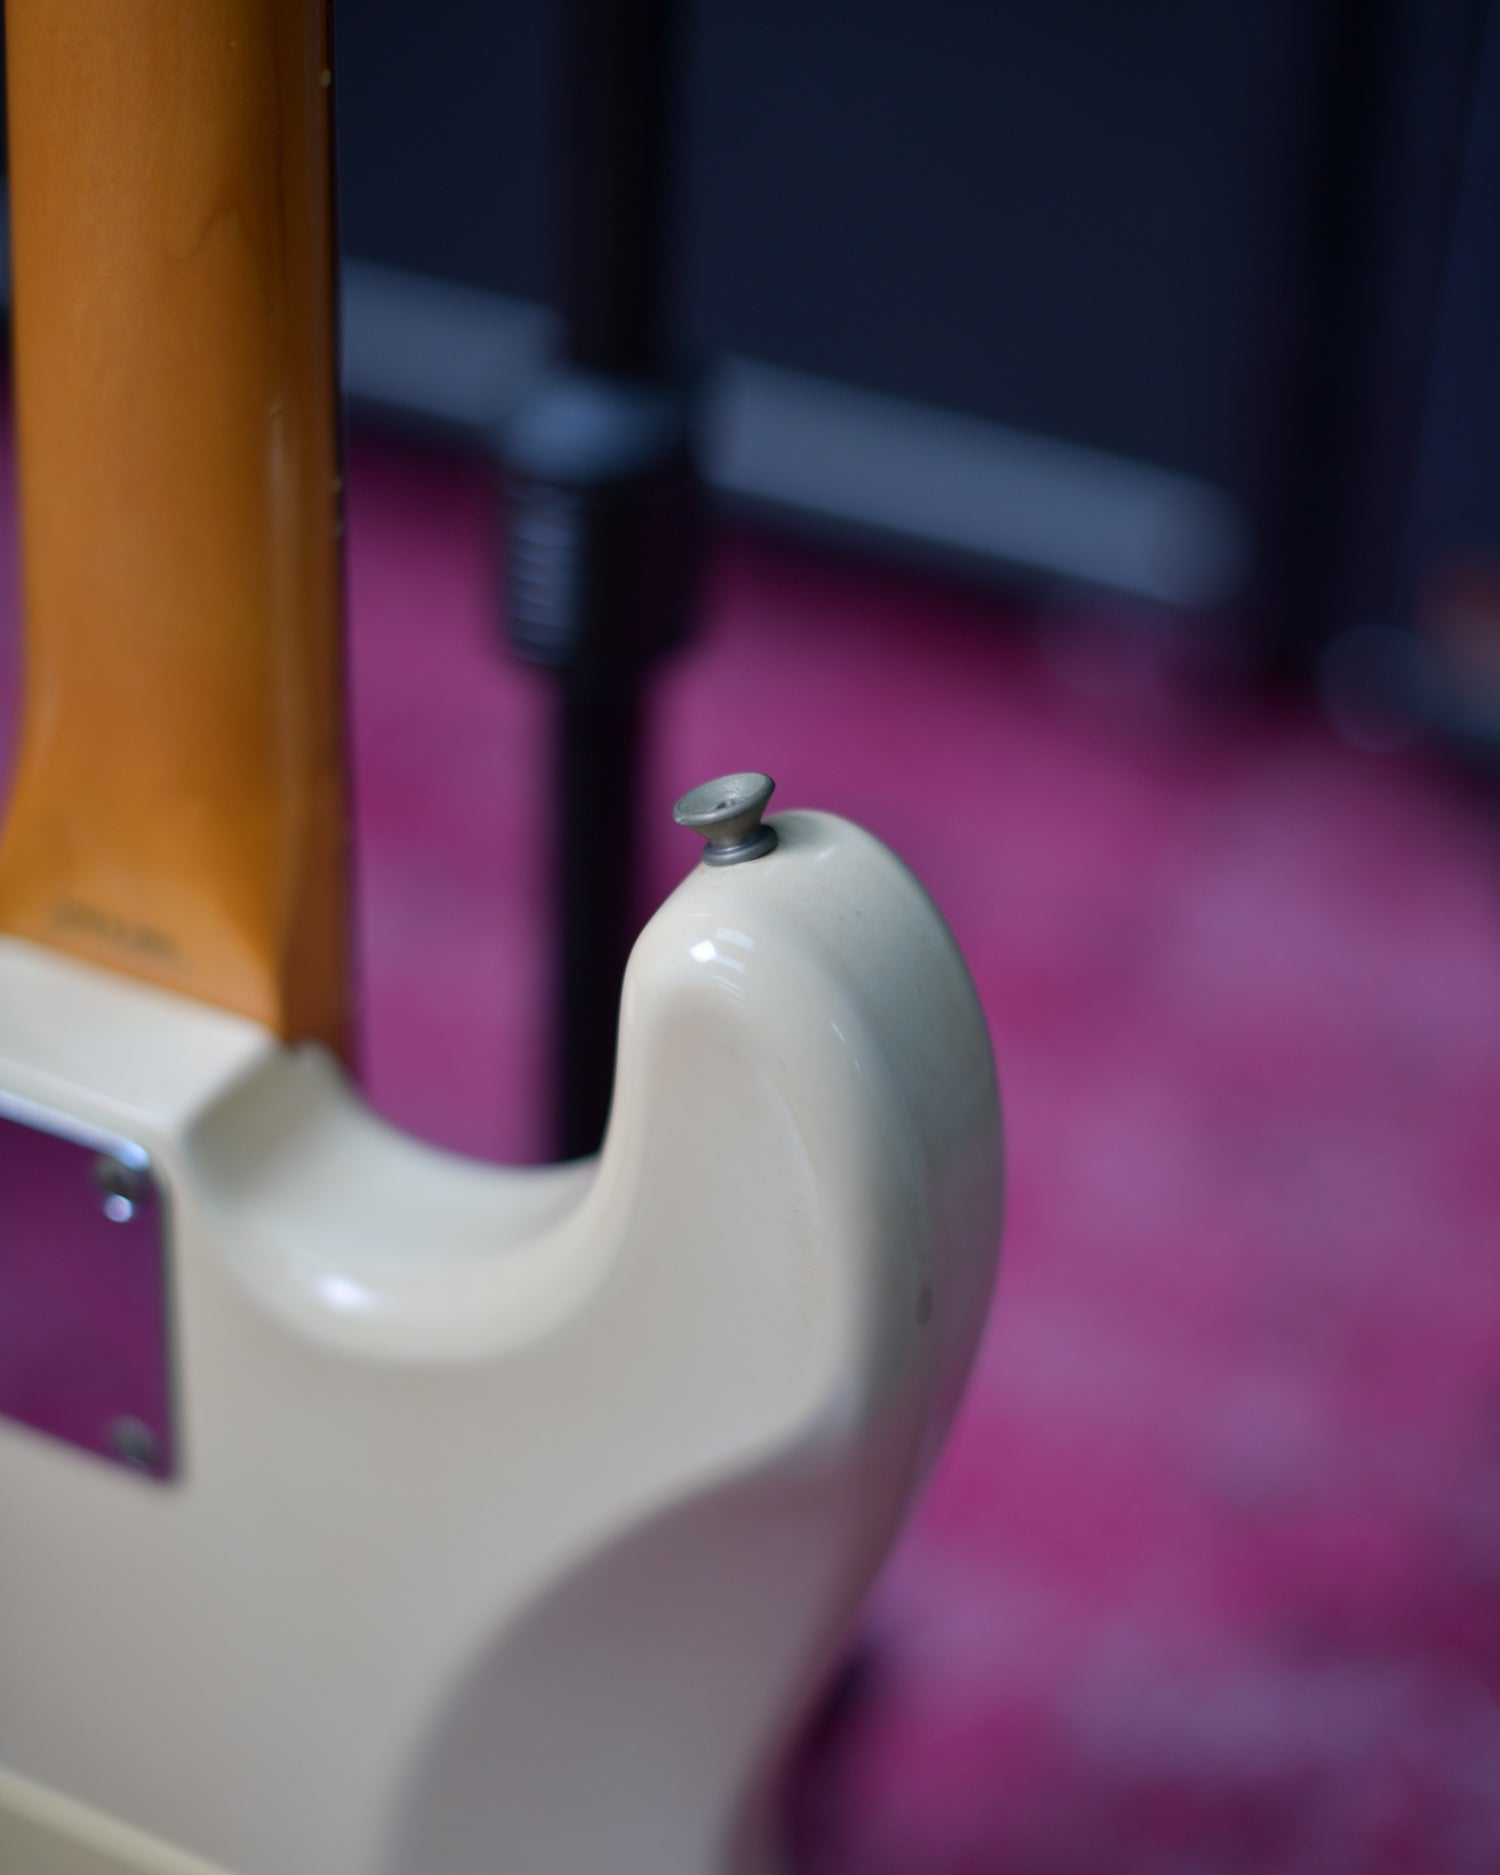 Fender Japan E-serial Stratocaster MIJ Vintage White 88'